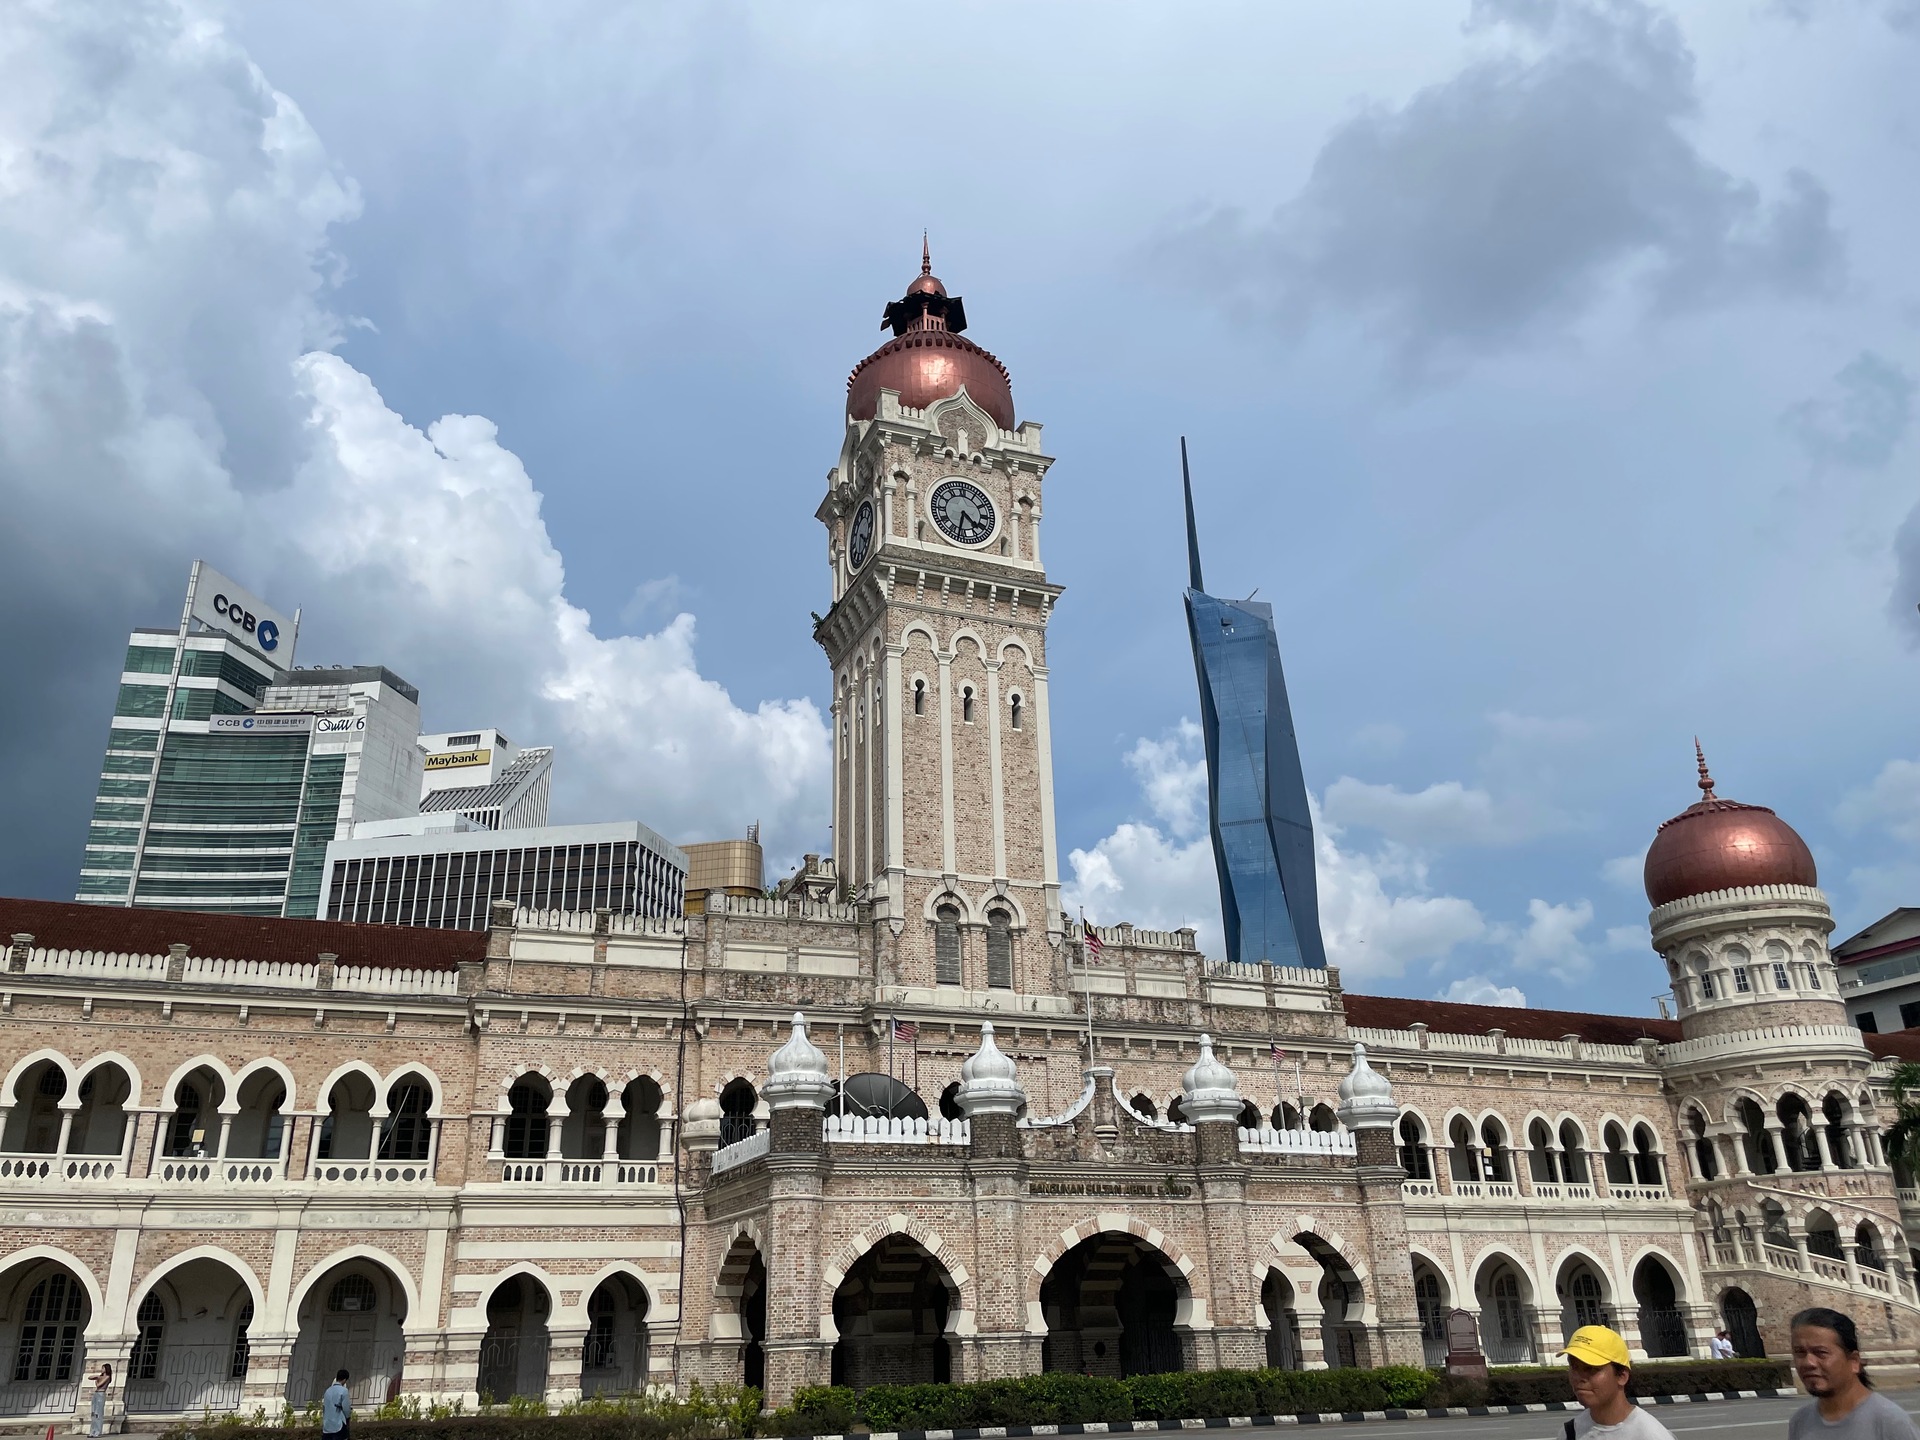 Здание султана Абдул-Самада на площади Мердека, а на фоне — Мердека 118. "Merdeka" с малайского переводится как "свобода".